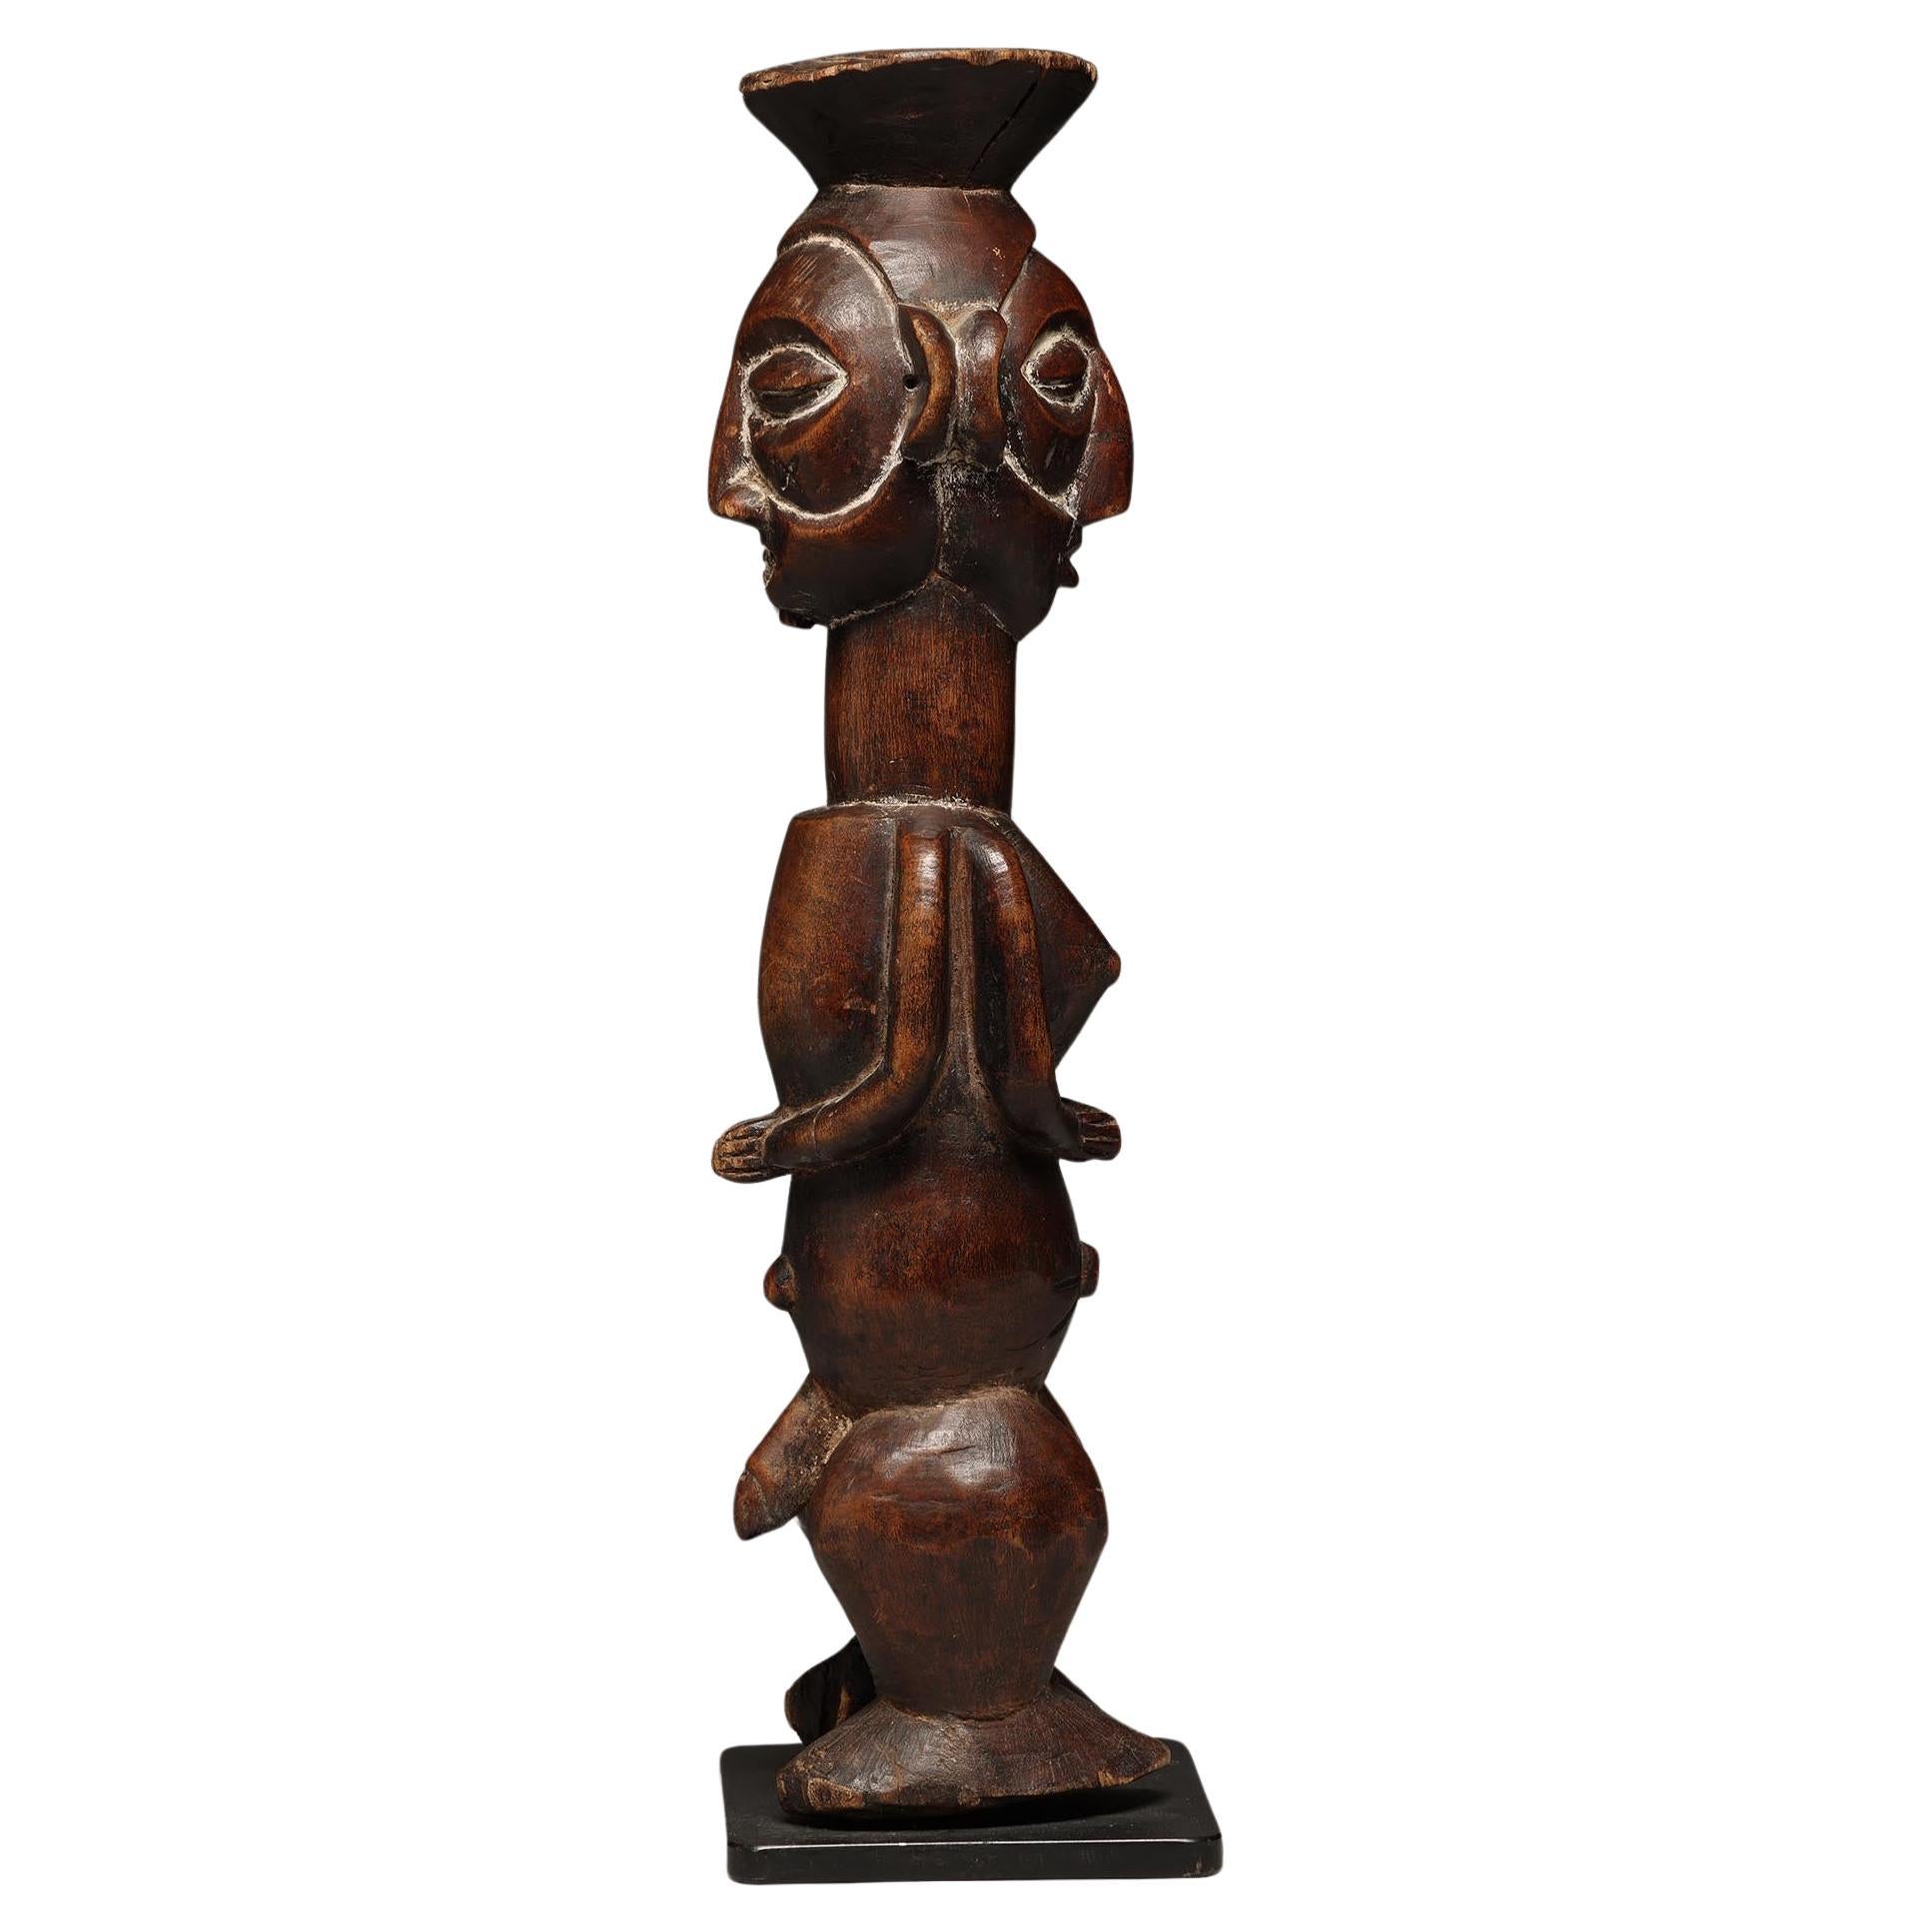 Yaka Holz geschnitzt stehend Janus Rücken an Rücken männlich/weiblich Weissagung Figur DRC Kongo, Afrika
Die Figur ist 17 1/2